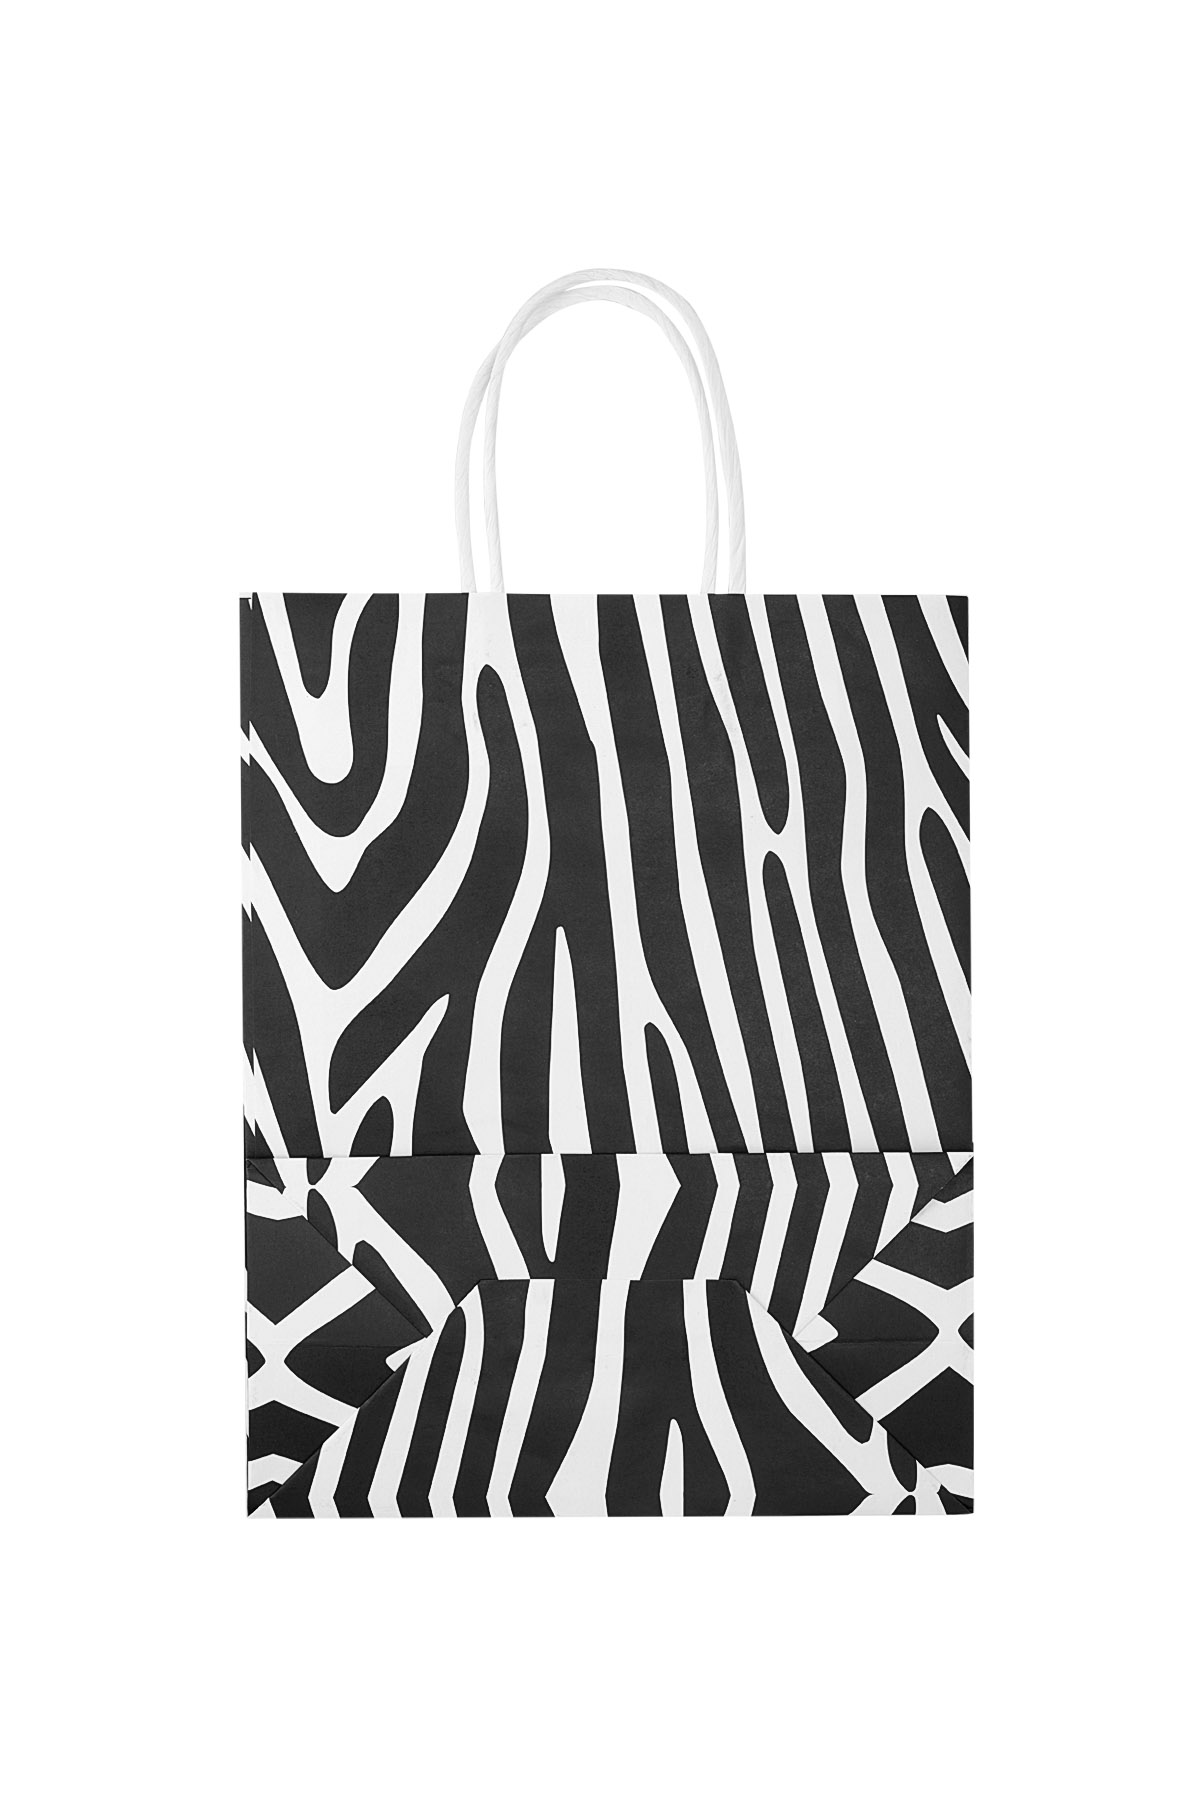 Tüten Zebra 50 Stück - schwarz/weißes Papier h5 Bild2